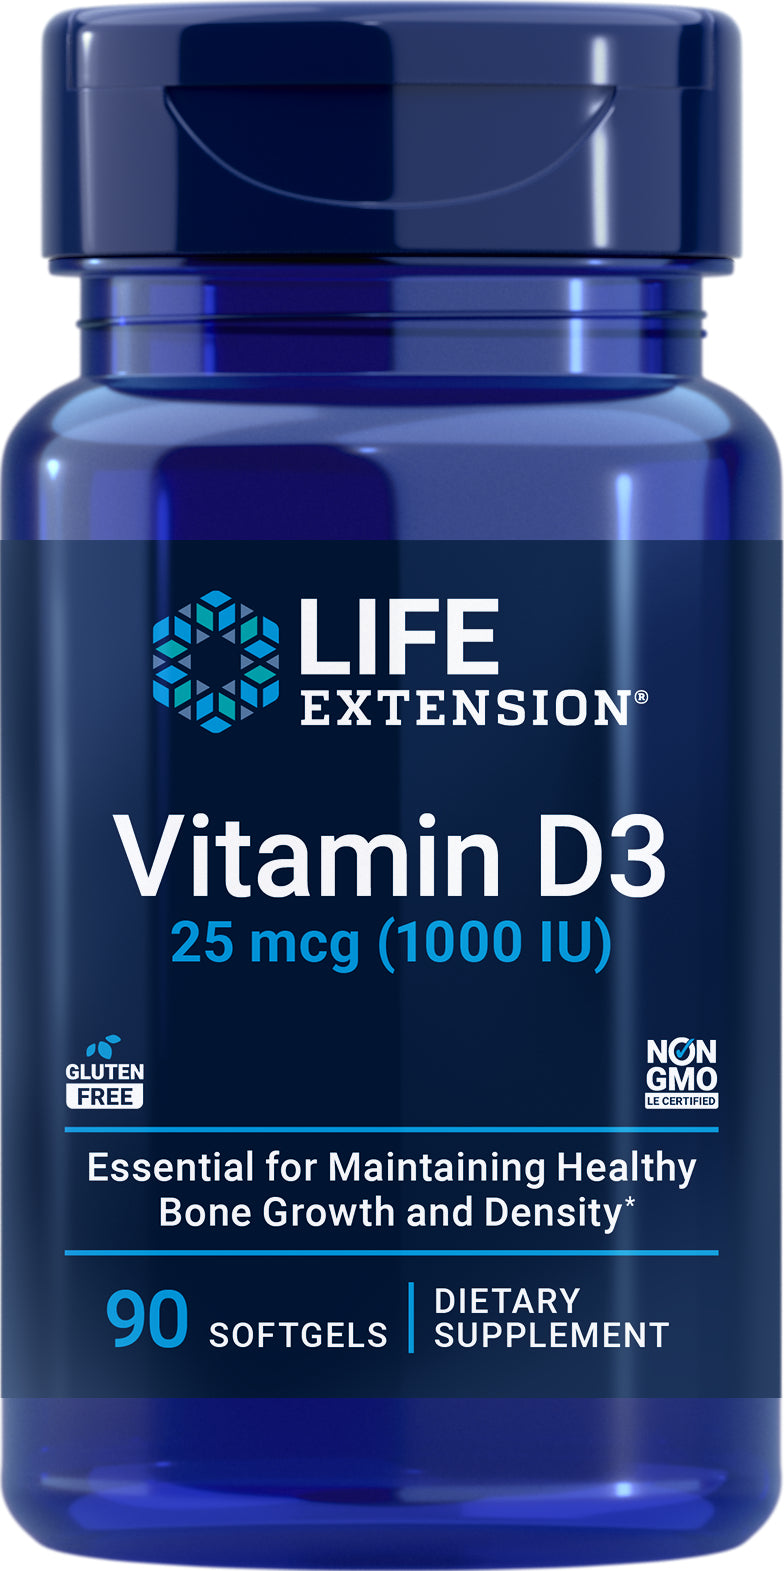 Vitamin D3 25 mcg (1000 IU), 90 softgels by Life Extension